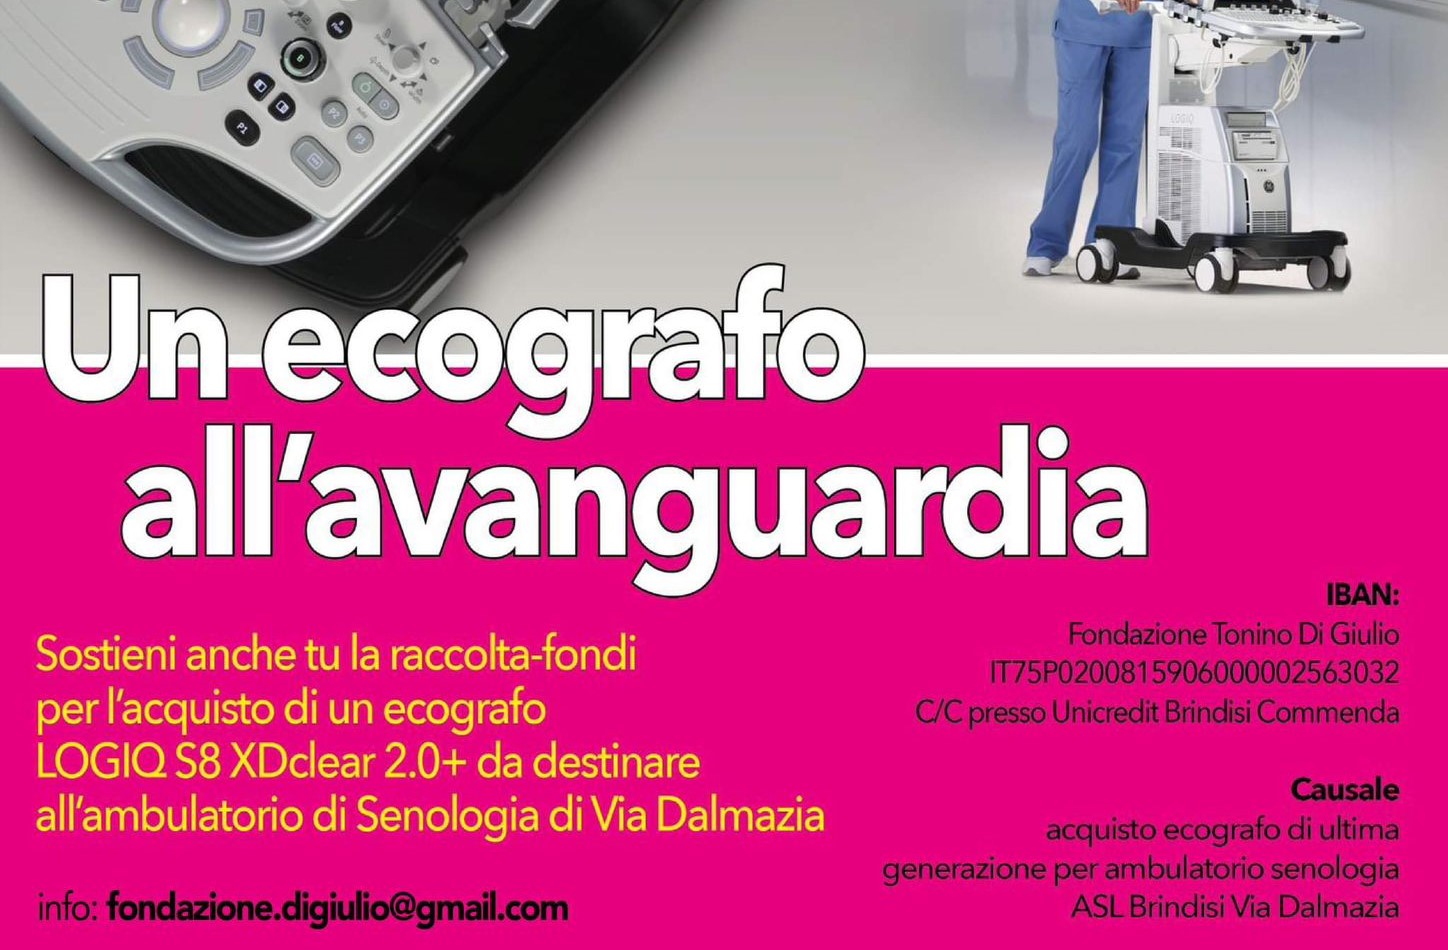 Brindisi: Raccolta fondi per l'acquisto di un Ecografo Digitale